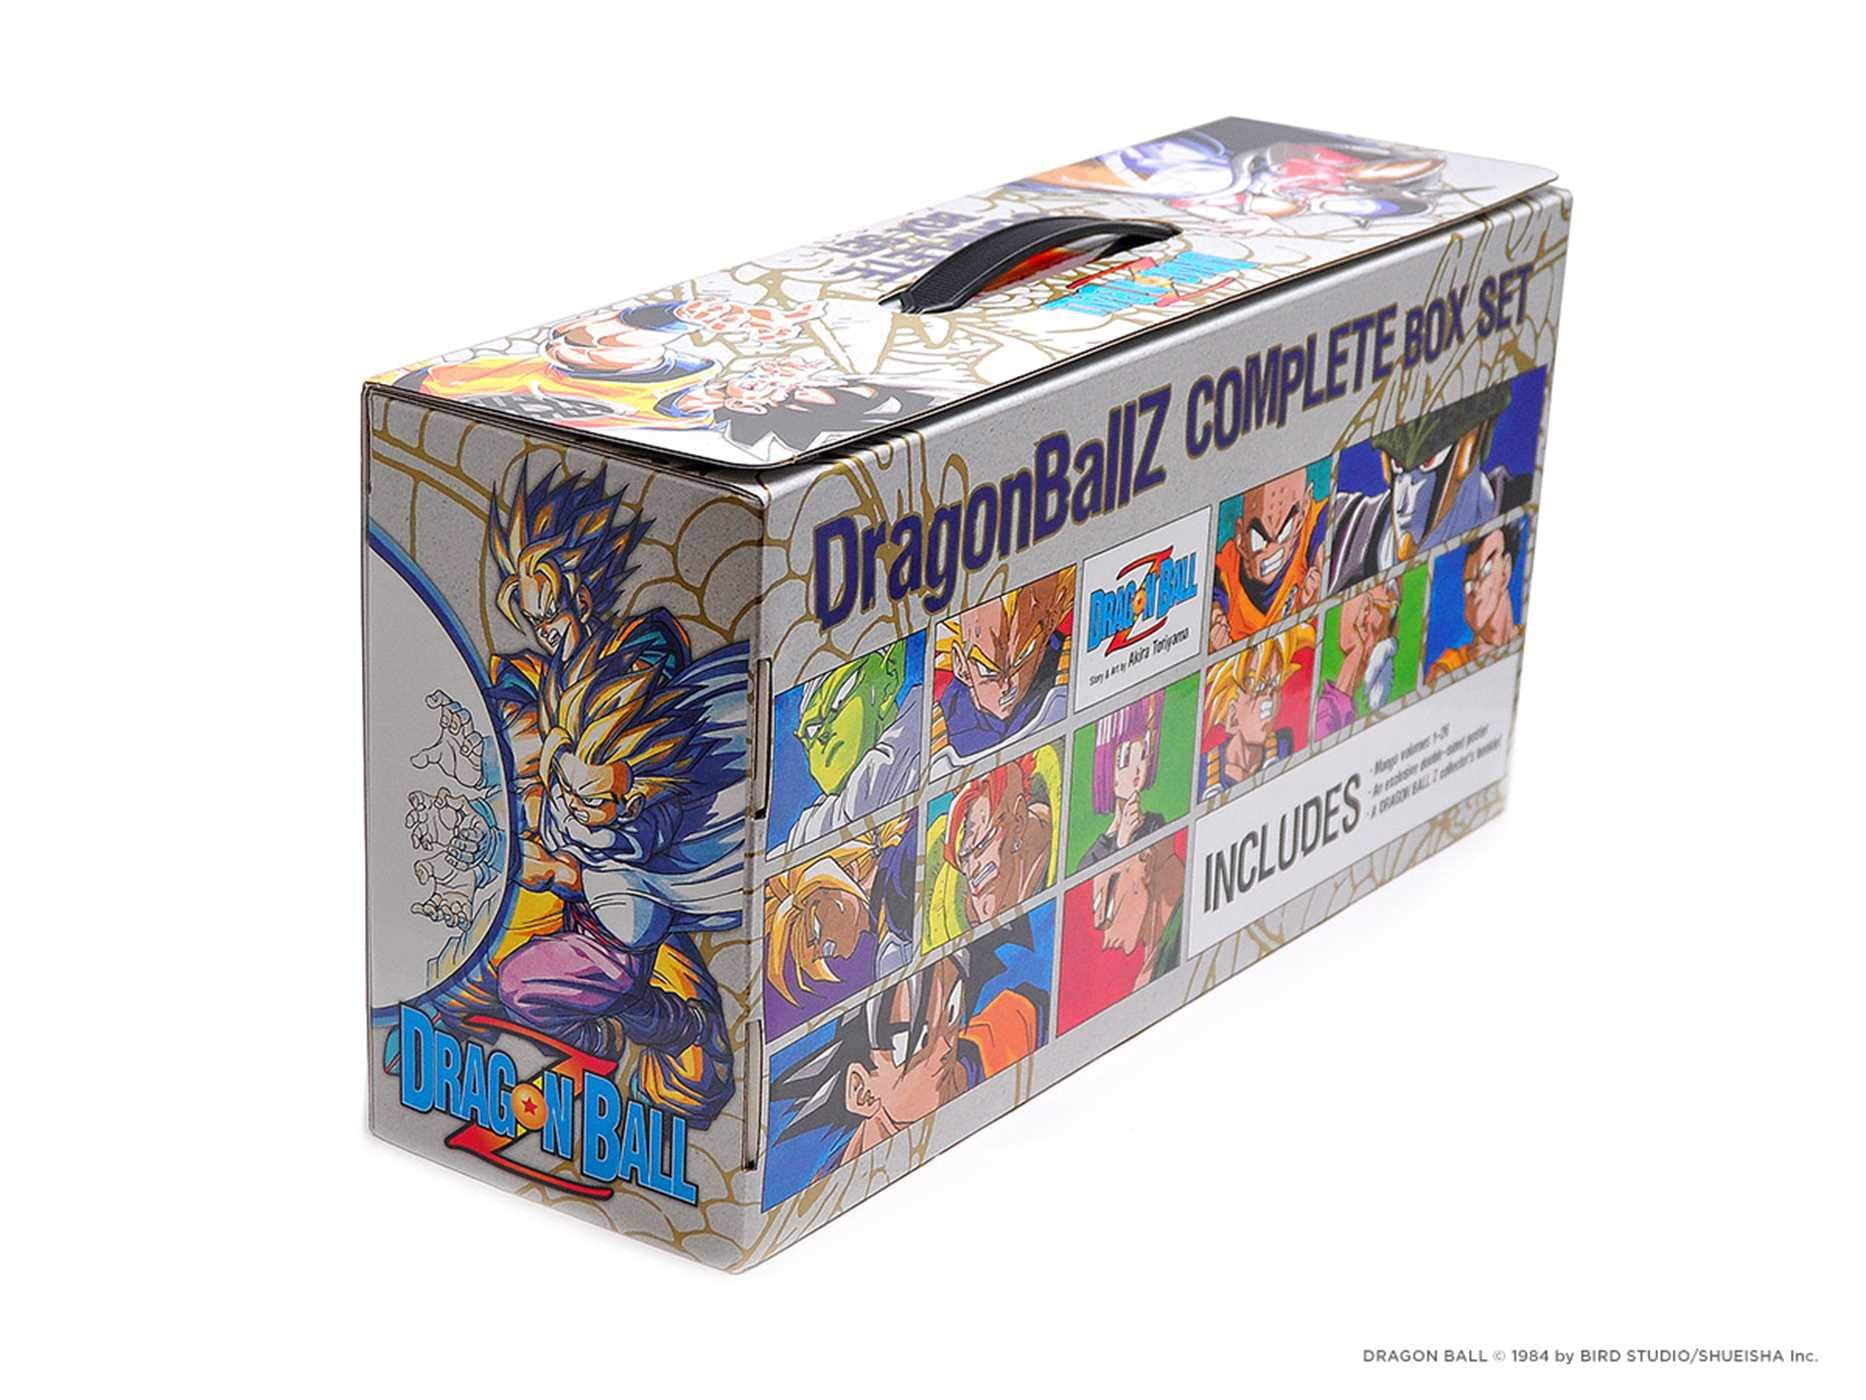 Complete Dragon Ball and Dragon Ball Z Manga Box Set Mega Deal Hits